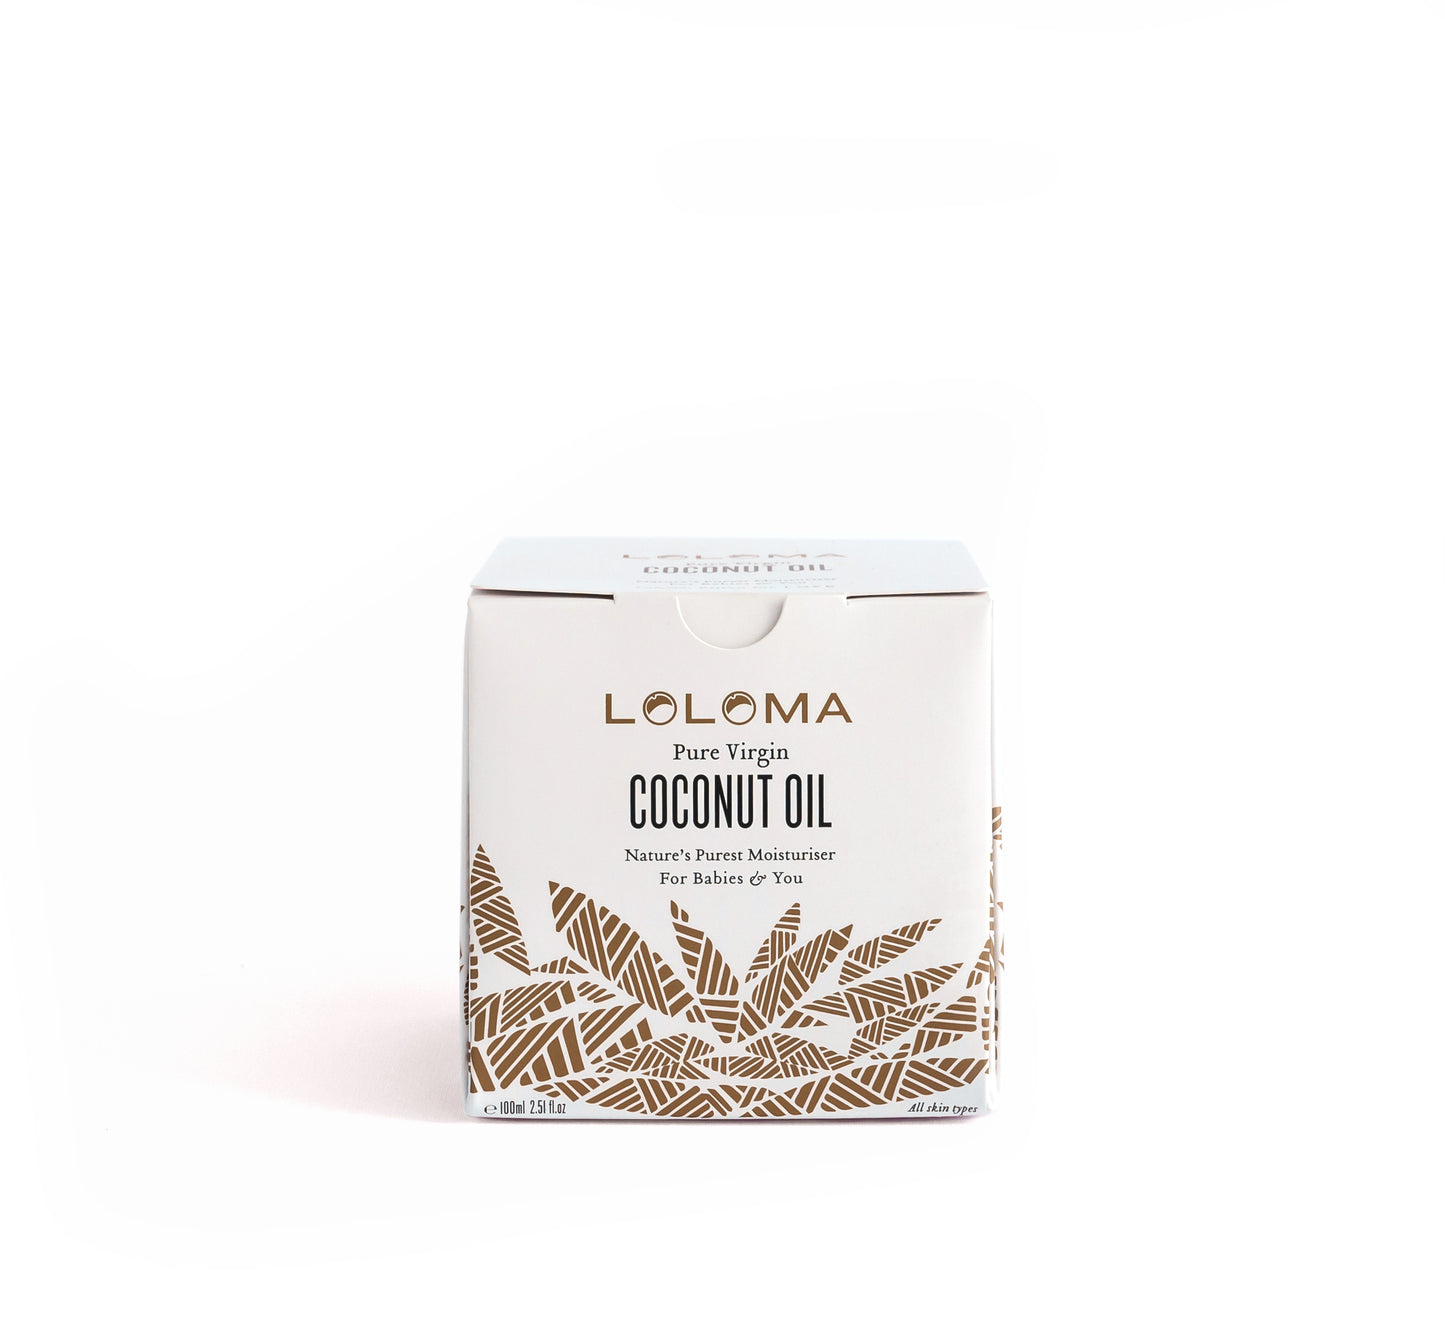 Loloma pure virgin coconut oil